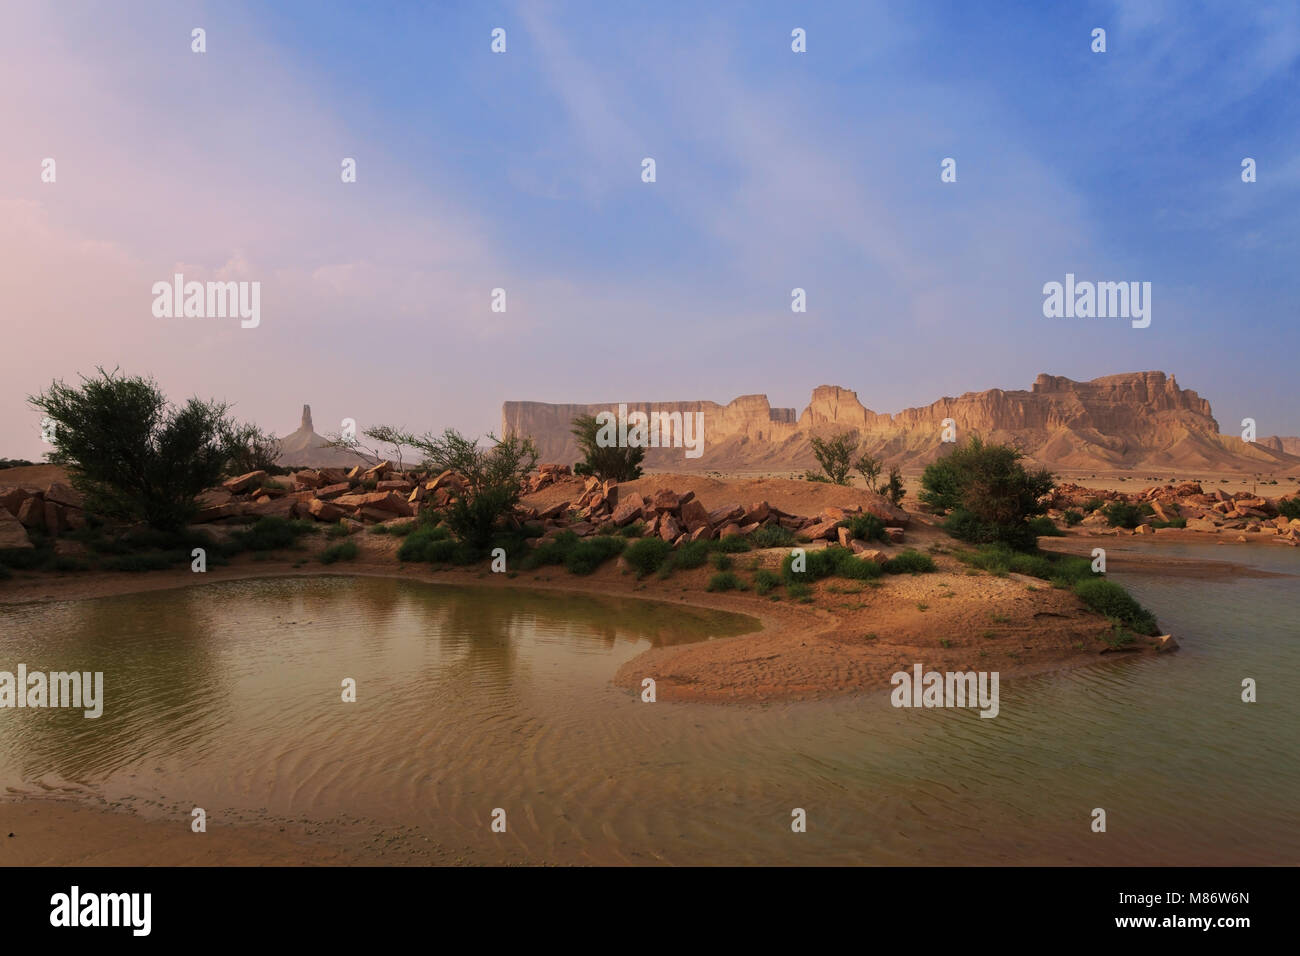 Desert landscape, Tuwaiq Mountains, Riyadh, Saudi Arabia Stock Photo